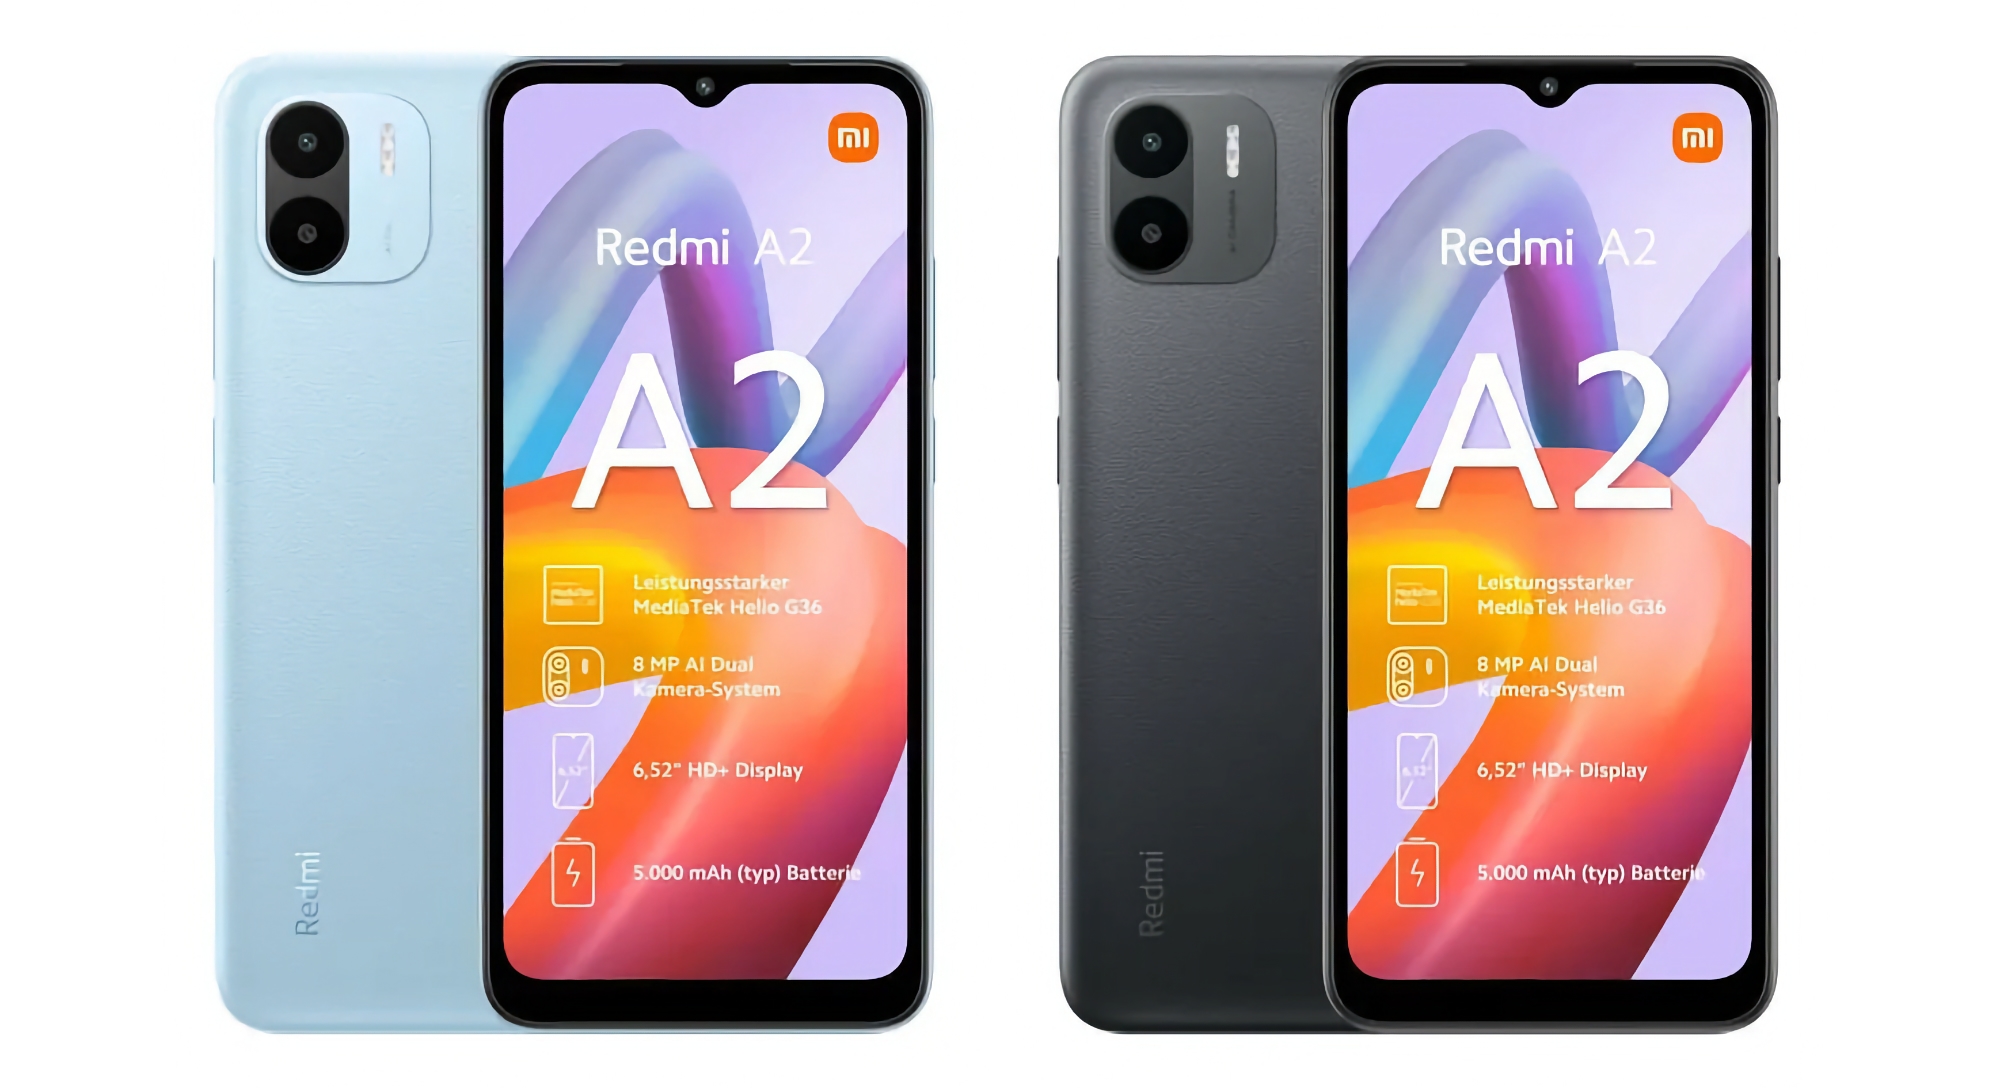 Xiaomi przygotowuje się do premiery budżetowego smartfona Redmi A2 z podwójnym aparatem, układem MediaTek Helio G36 i ceną poniżej 100 euro.